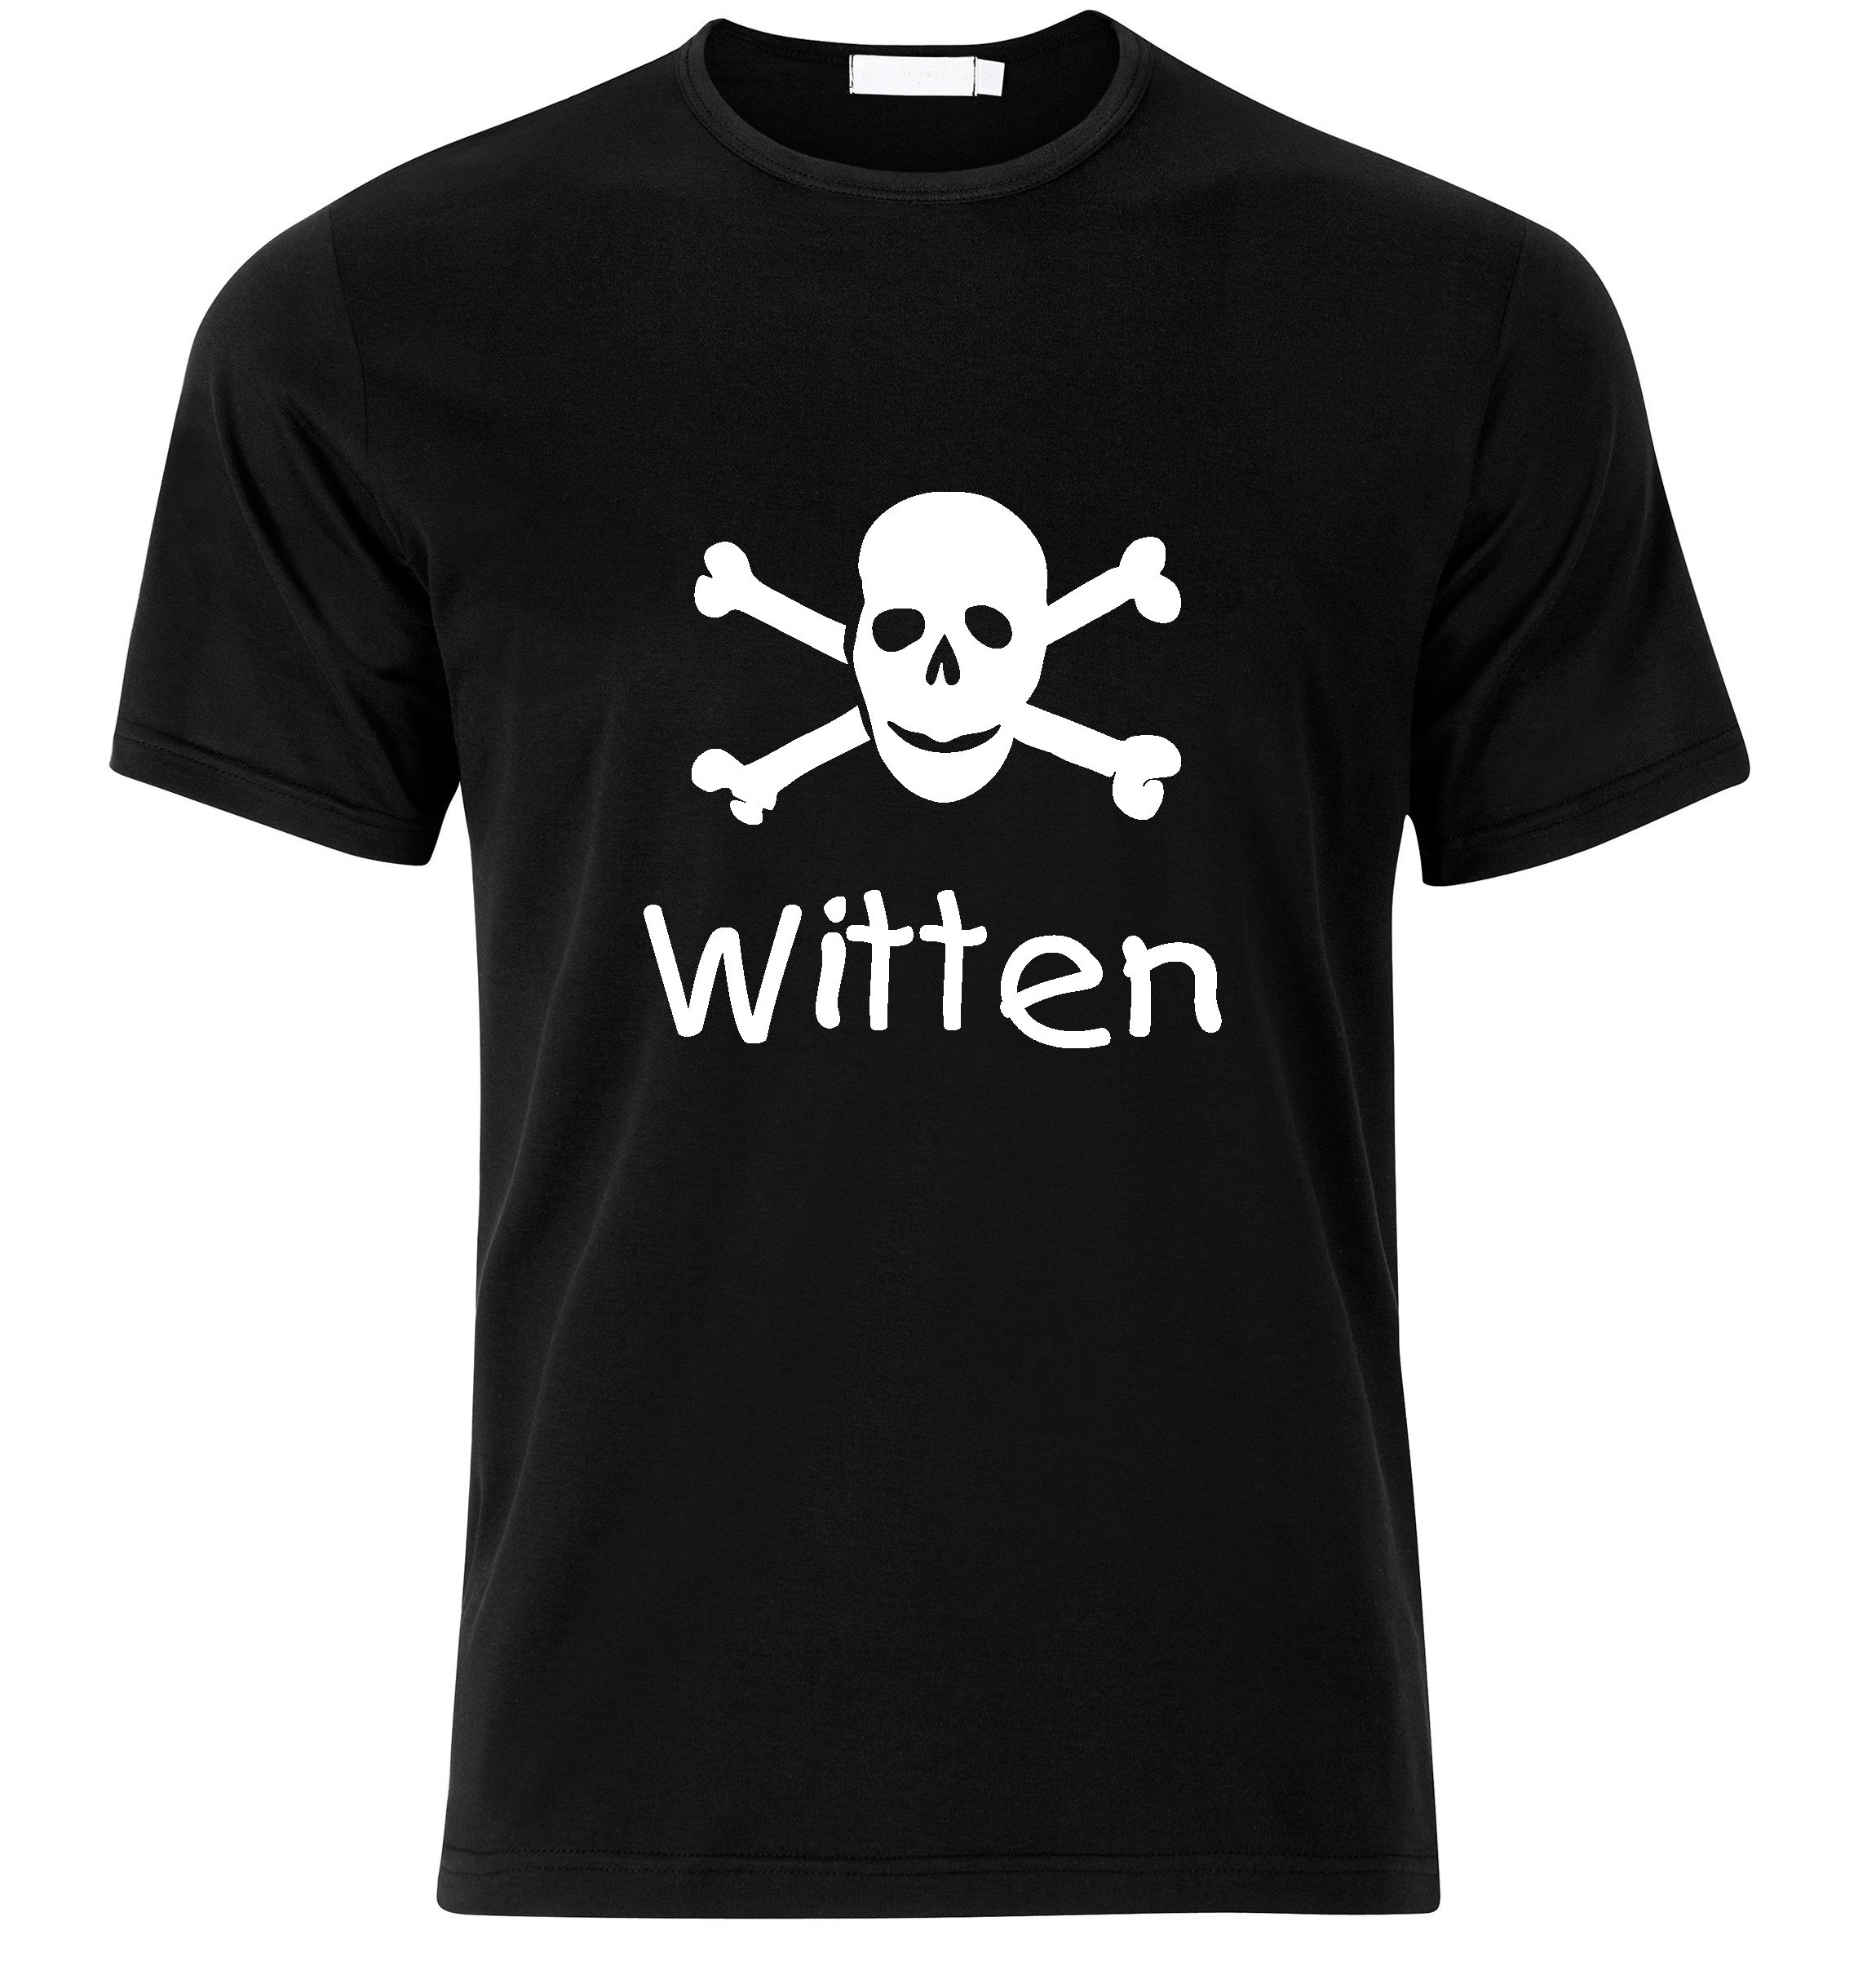 T-Shirt Witten Jolly Roger, Totenkopf